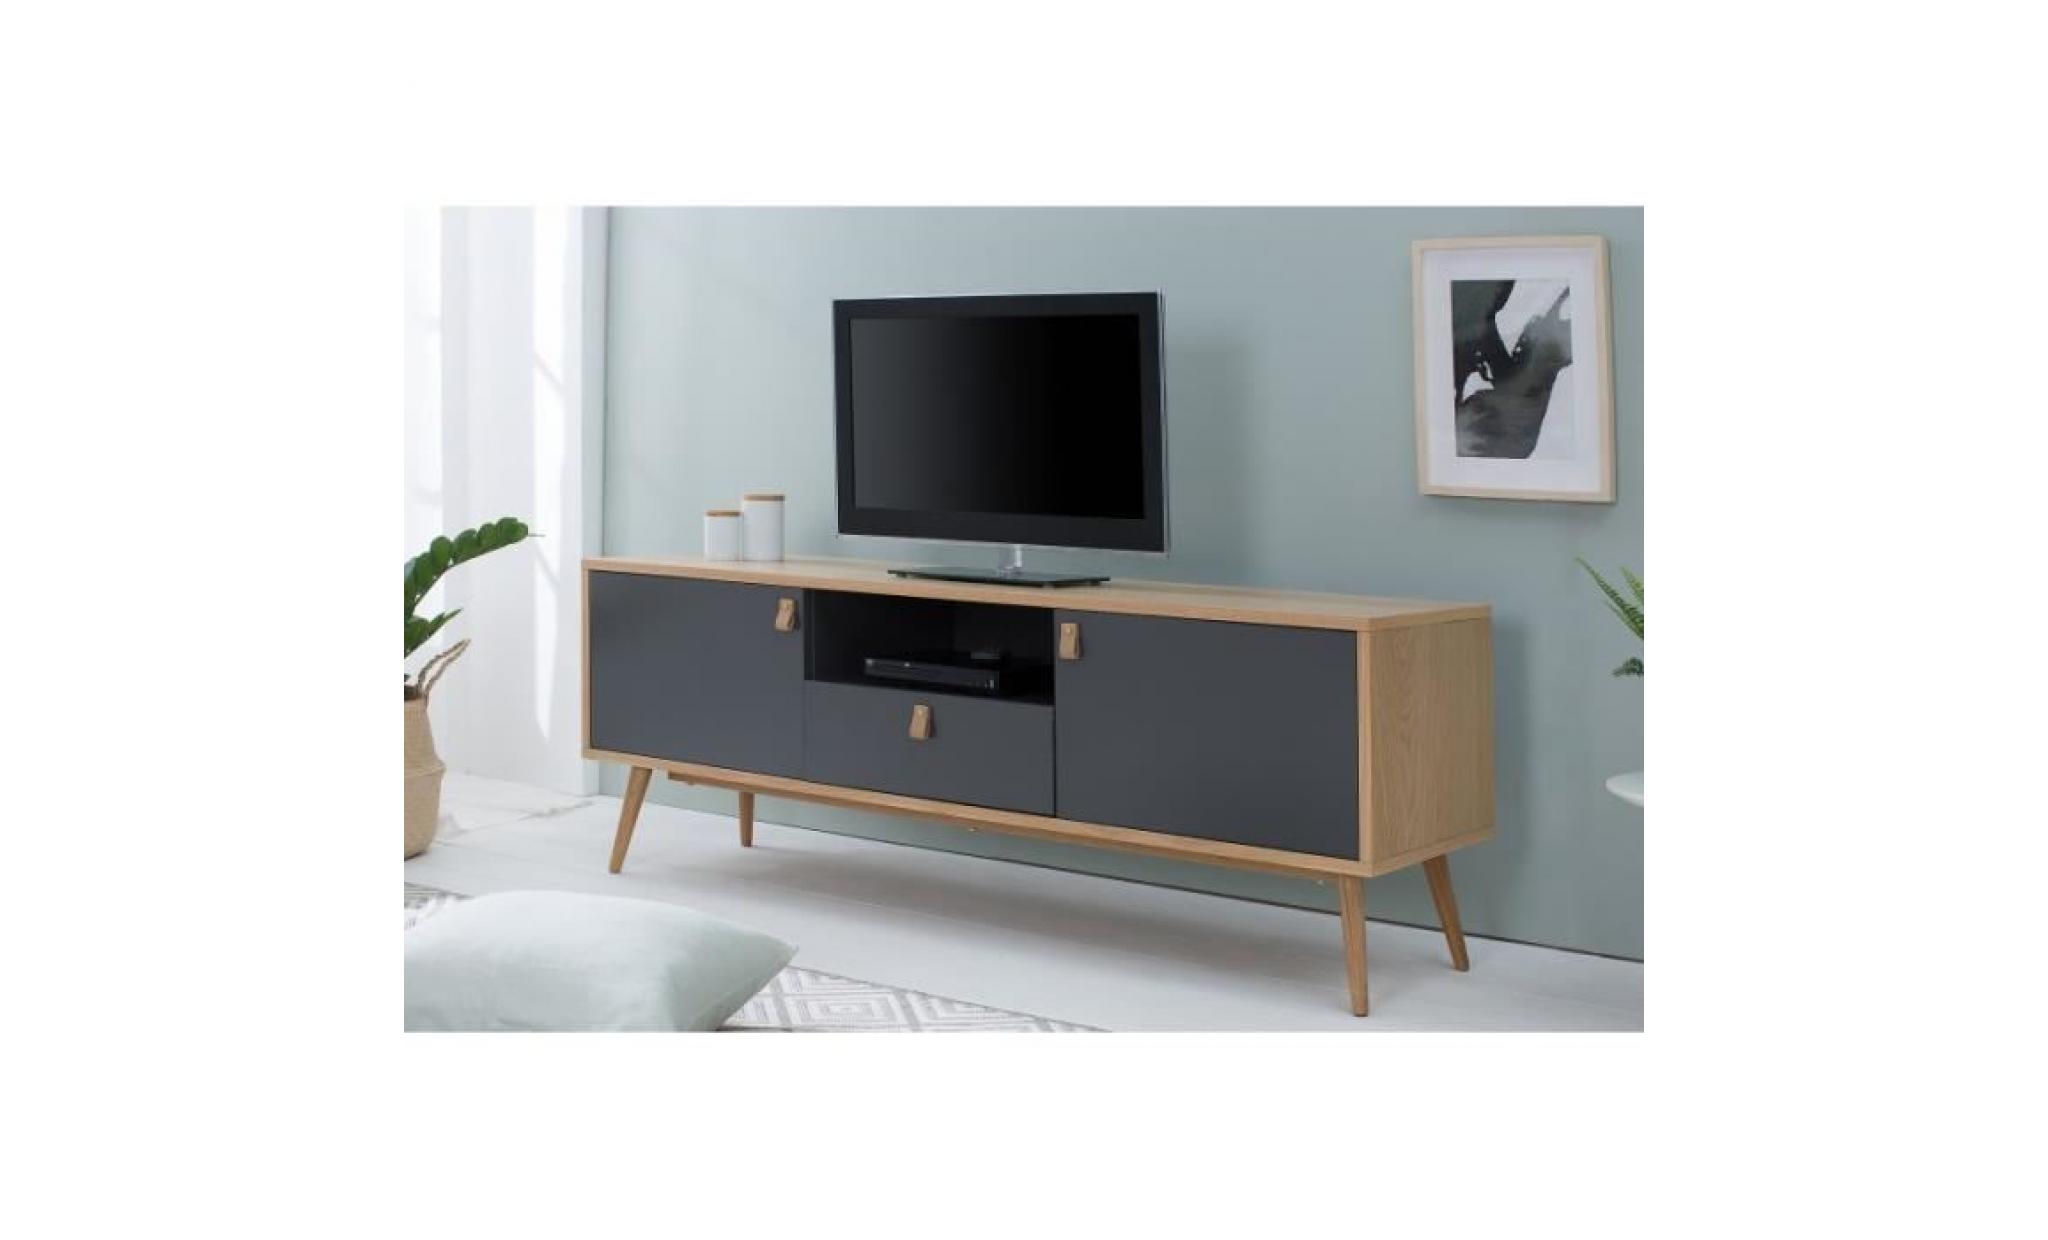 casa padrino designer meuble tv   buffet 150cm x 40cm x h.55cm   console   meubles d'hôtel pas cher